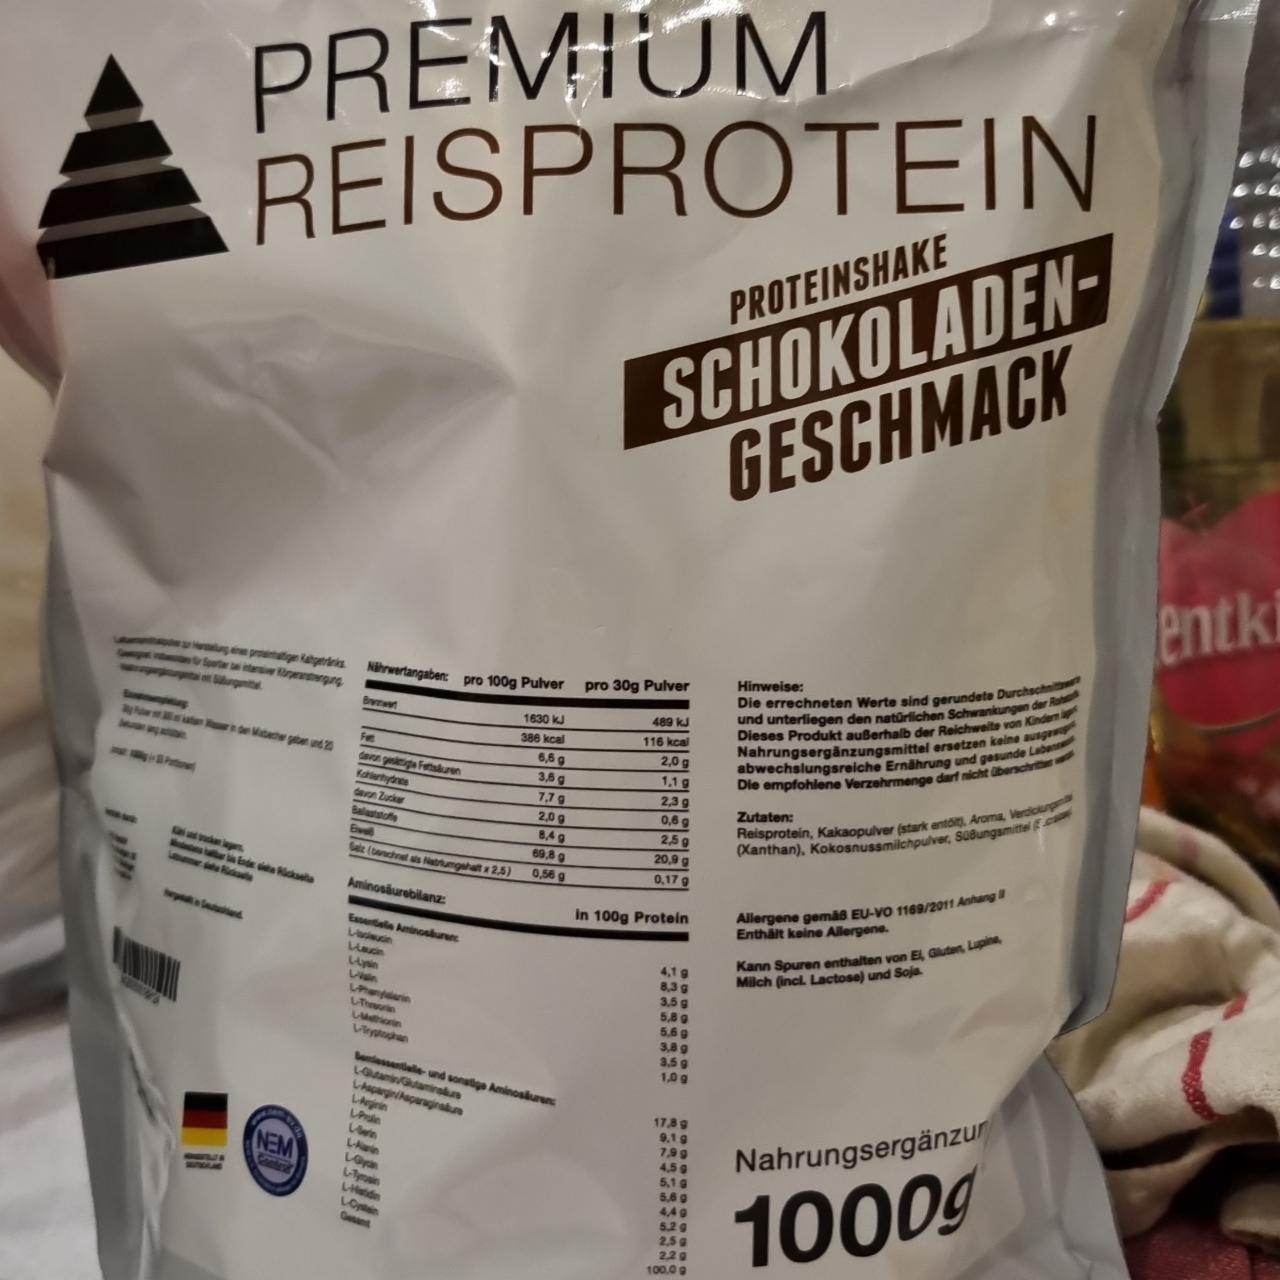 Fotografie - Premium Reisprotein Proteinshake Schokoladen geschmack